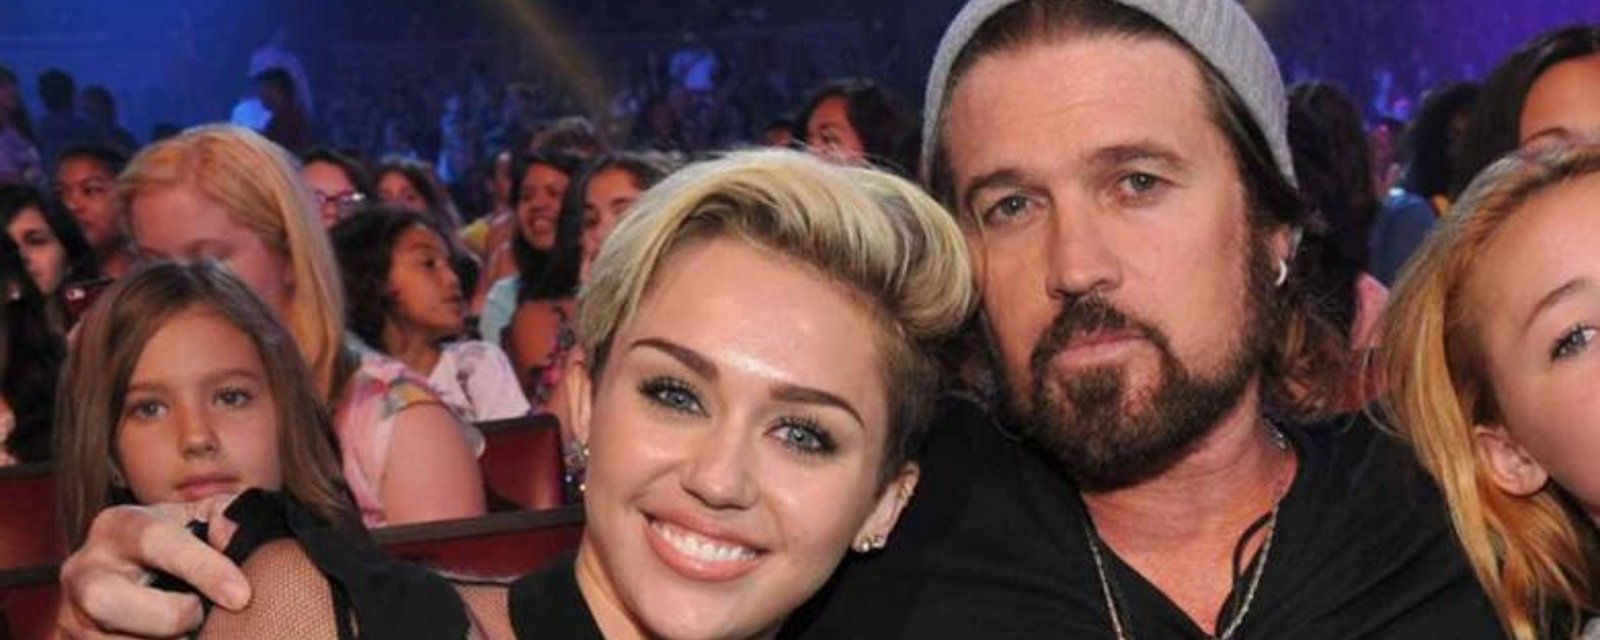 Le père de Miley Cyrus commente les agissements de sa fille!